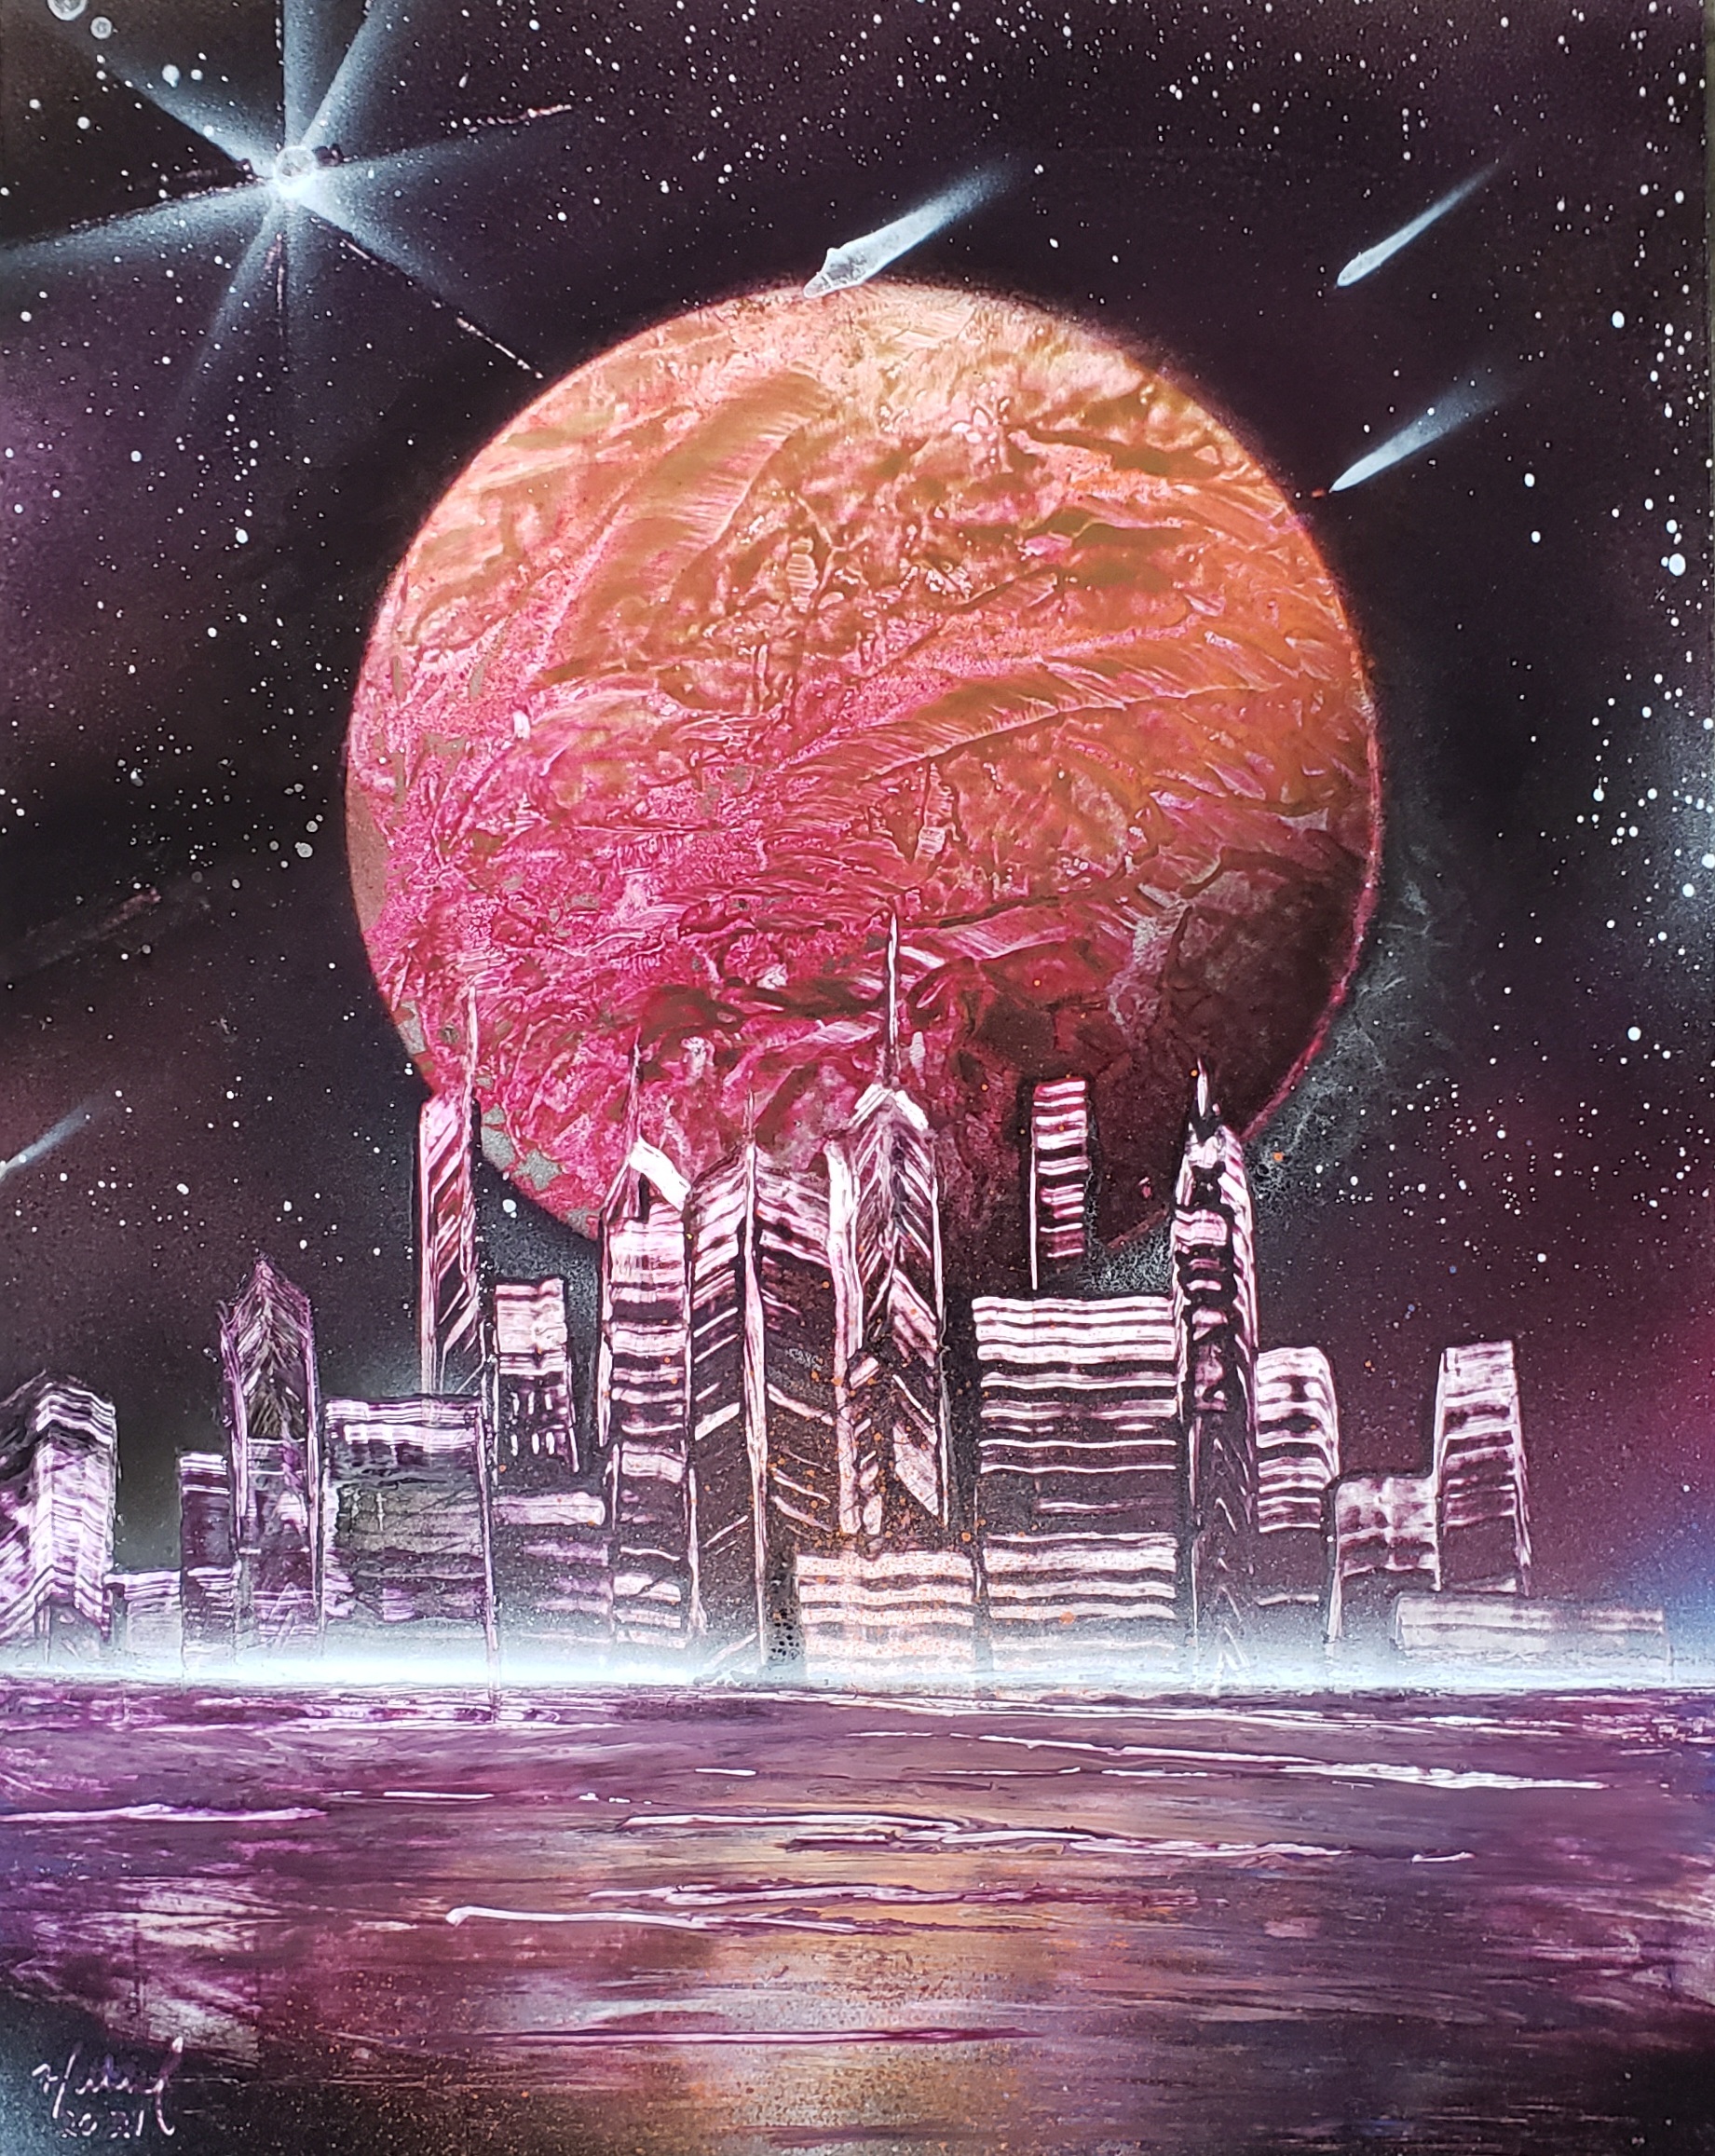 Cosmic City